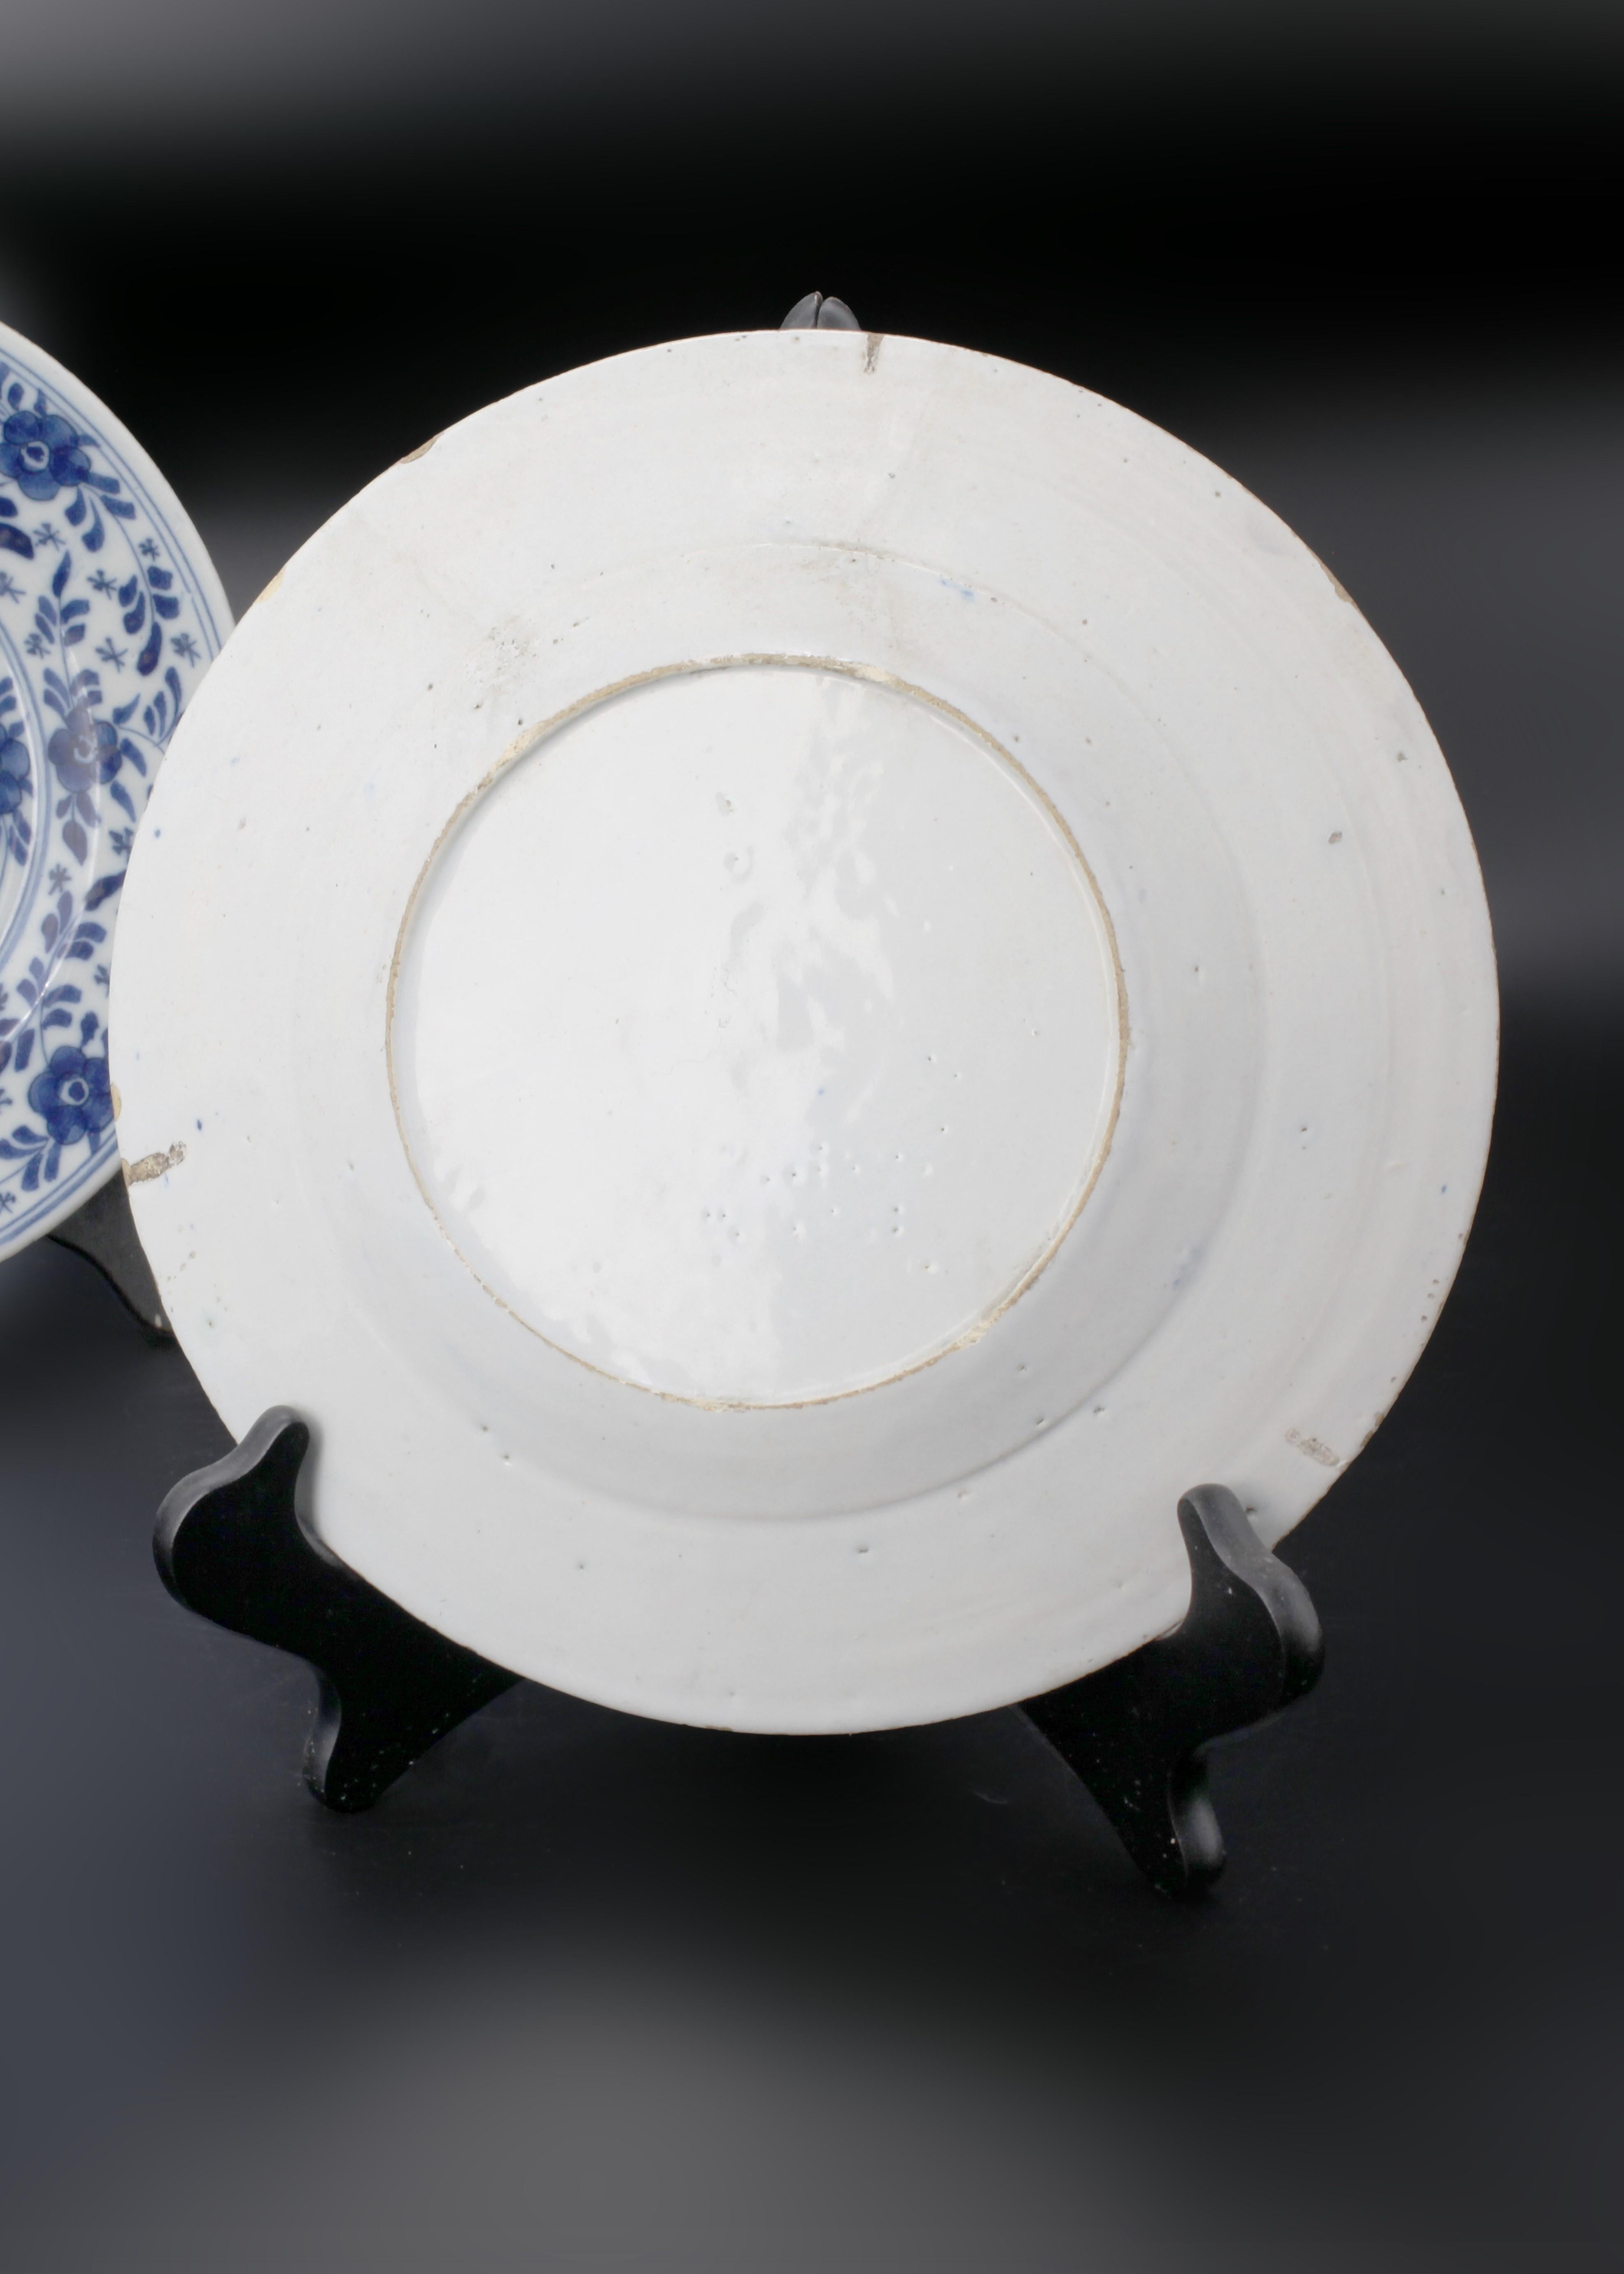 Ajoutez une touche d'artisanat hollandais du XVIIIe siècle à votre collection et observez l'élégance hollandaise fleurir sur la céramique avec ces assiettes en faïence bleue et blanche de Delft du XVIIIe siècle à la symétrie parfaite. Ornés